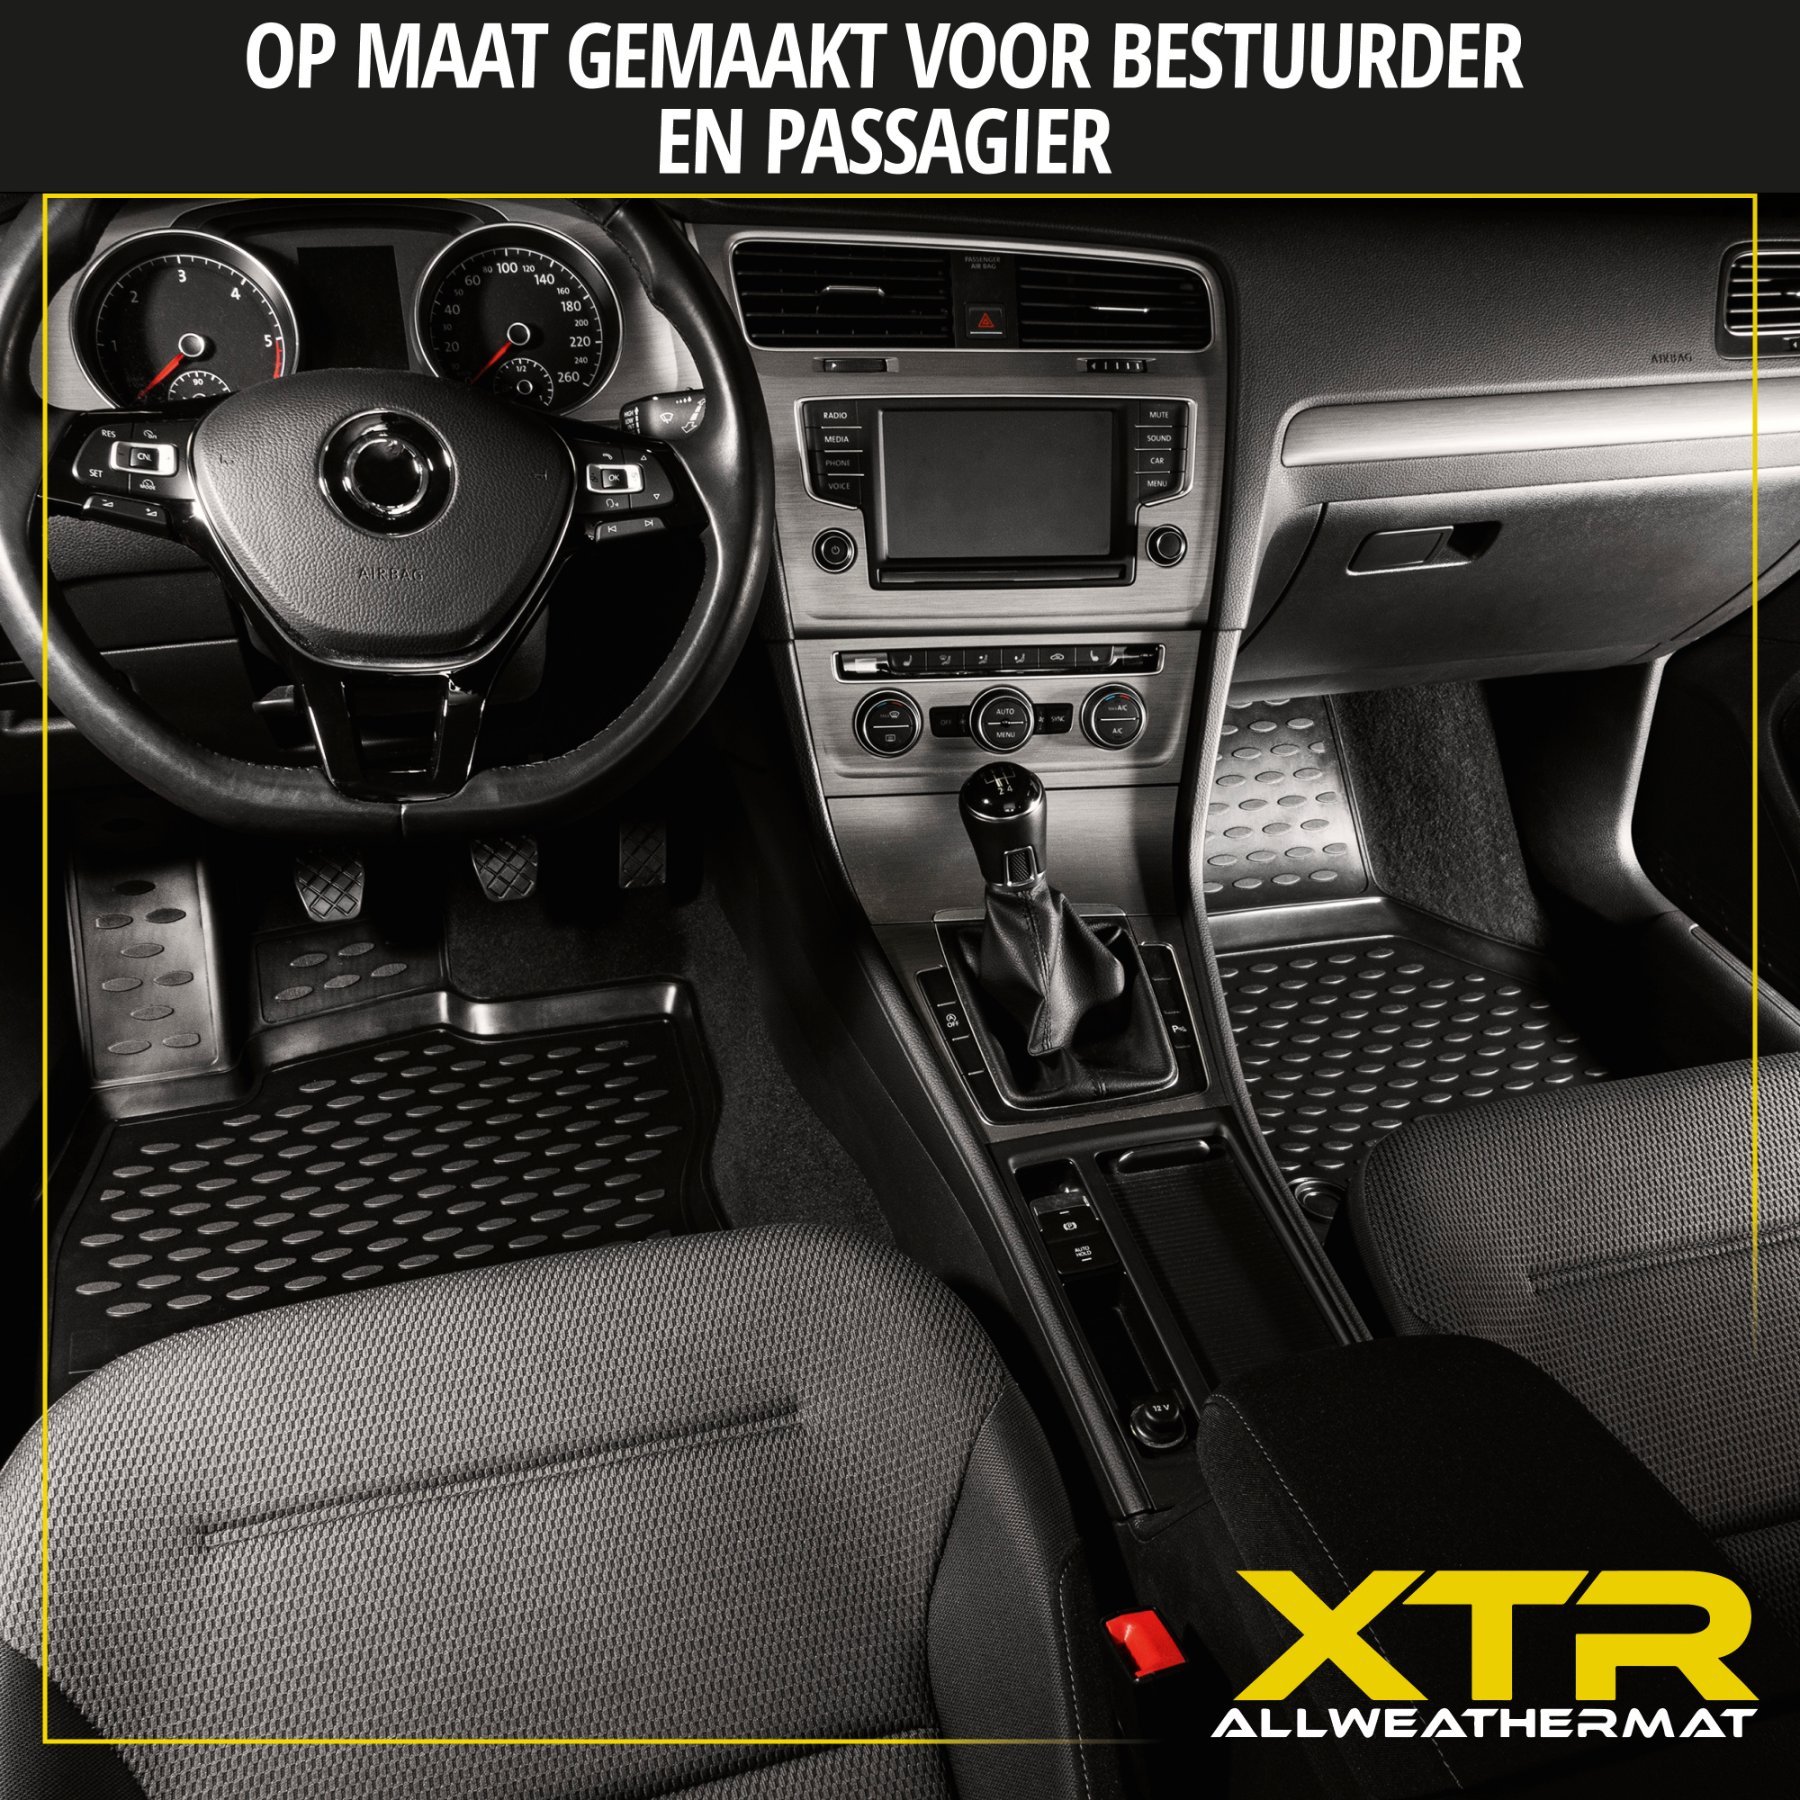 Rubberen Voetmatten XTR geschikt voor VW Golf 5 2003-2009, Golf 5 Variant 2007-2009, 5-deurs